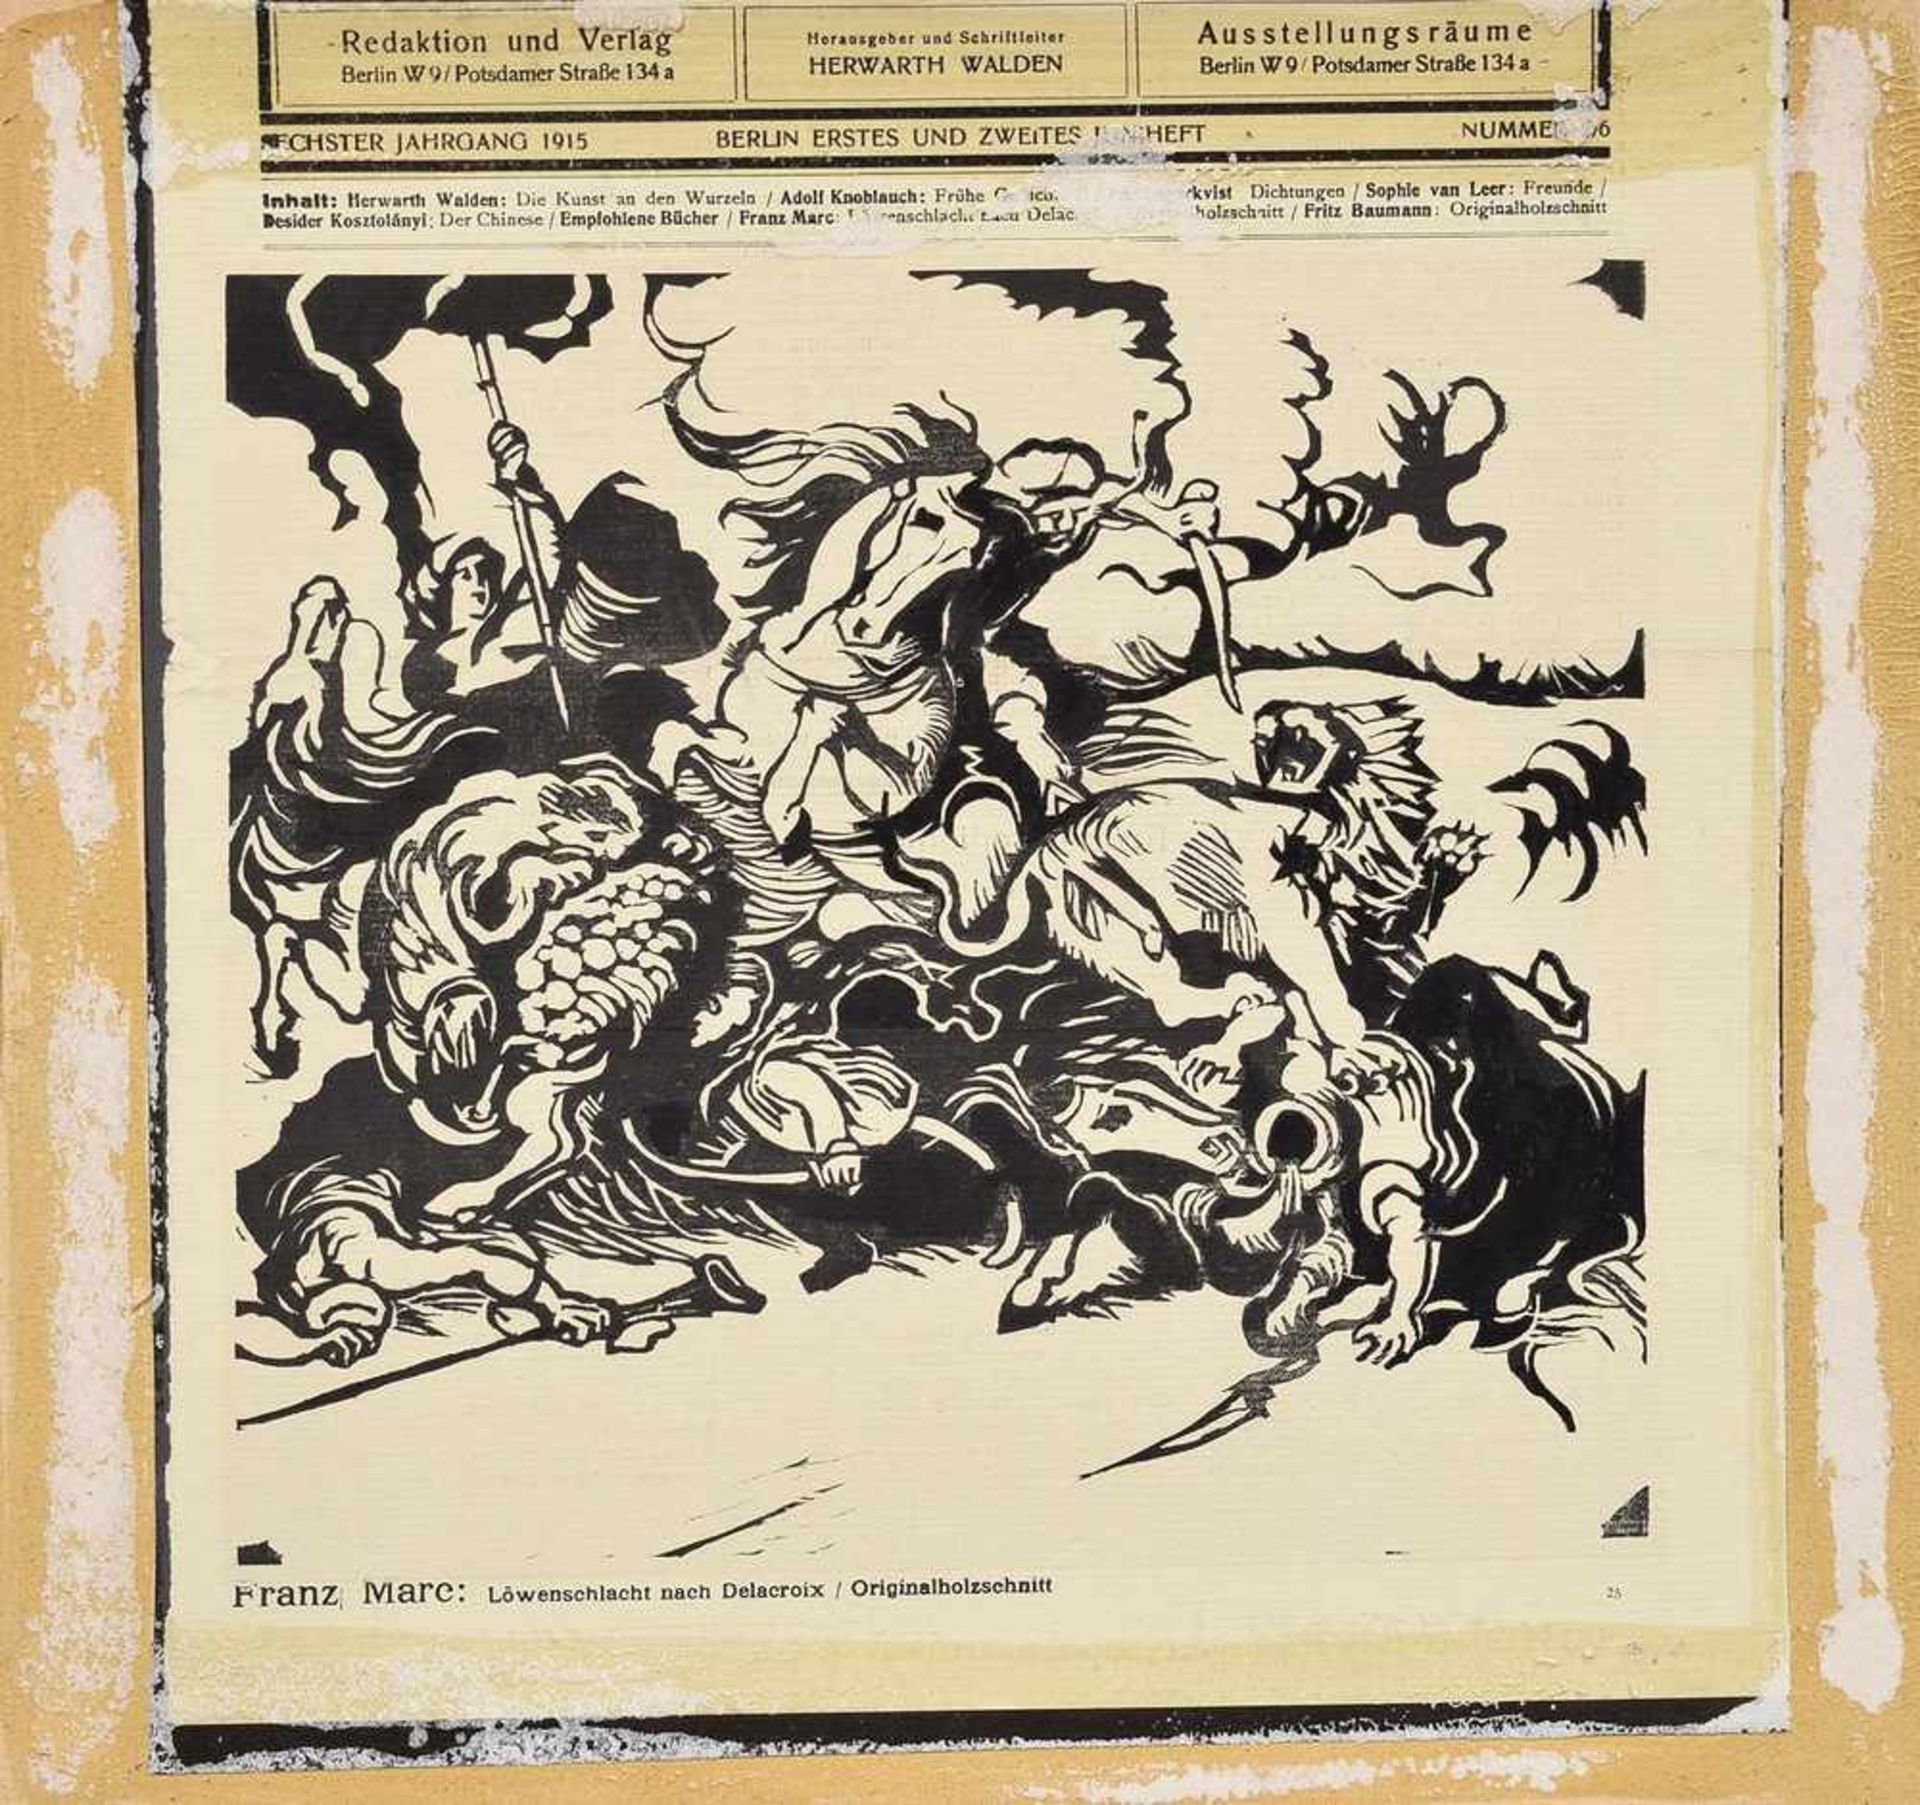 Marc, Franz (1887-1985) "Löwenschlacht nach Delacroix" 1913, Originalholzschnitt, aus: "Der